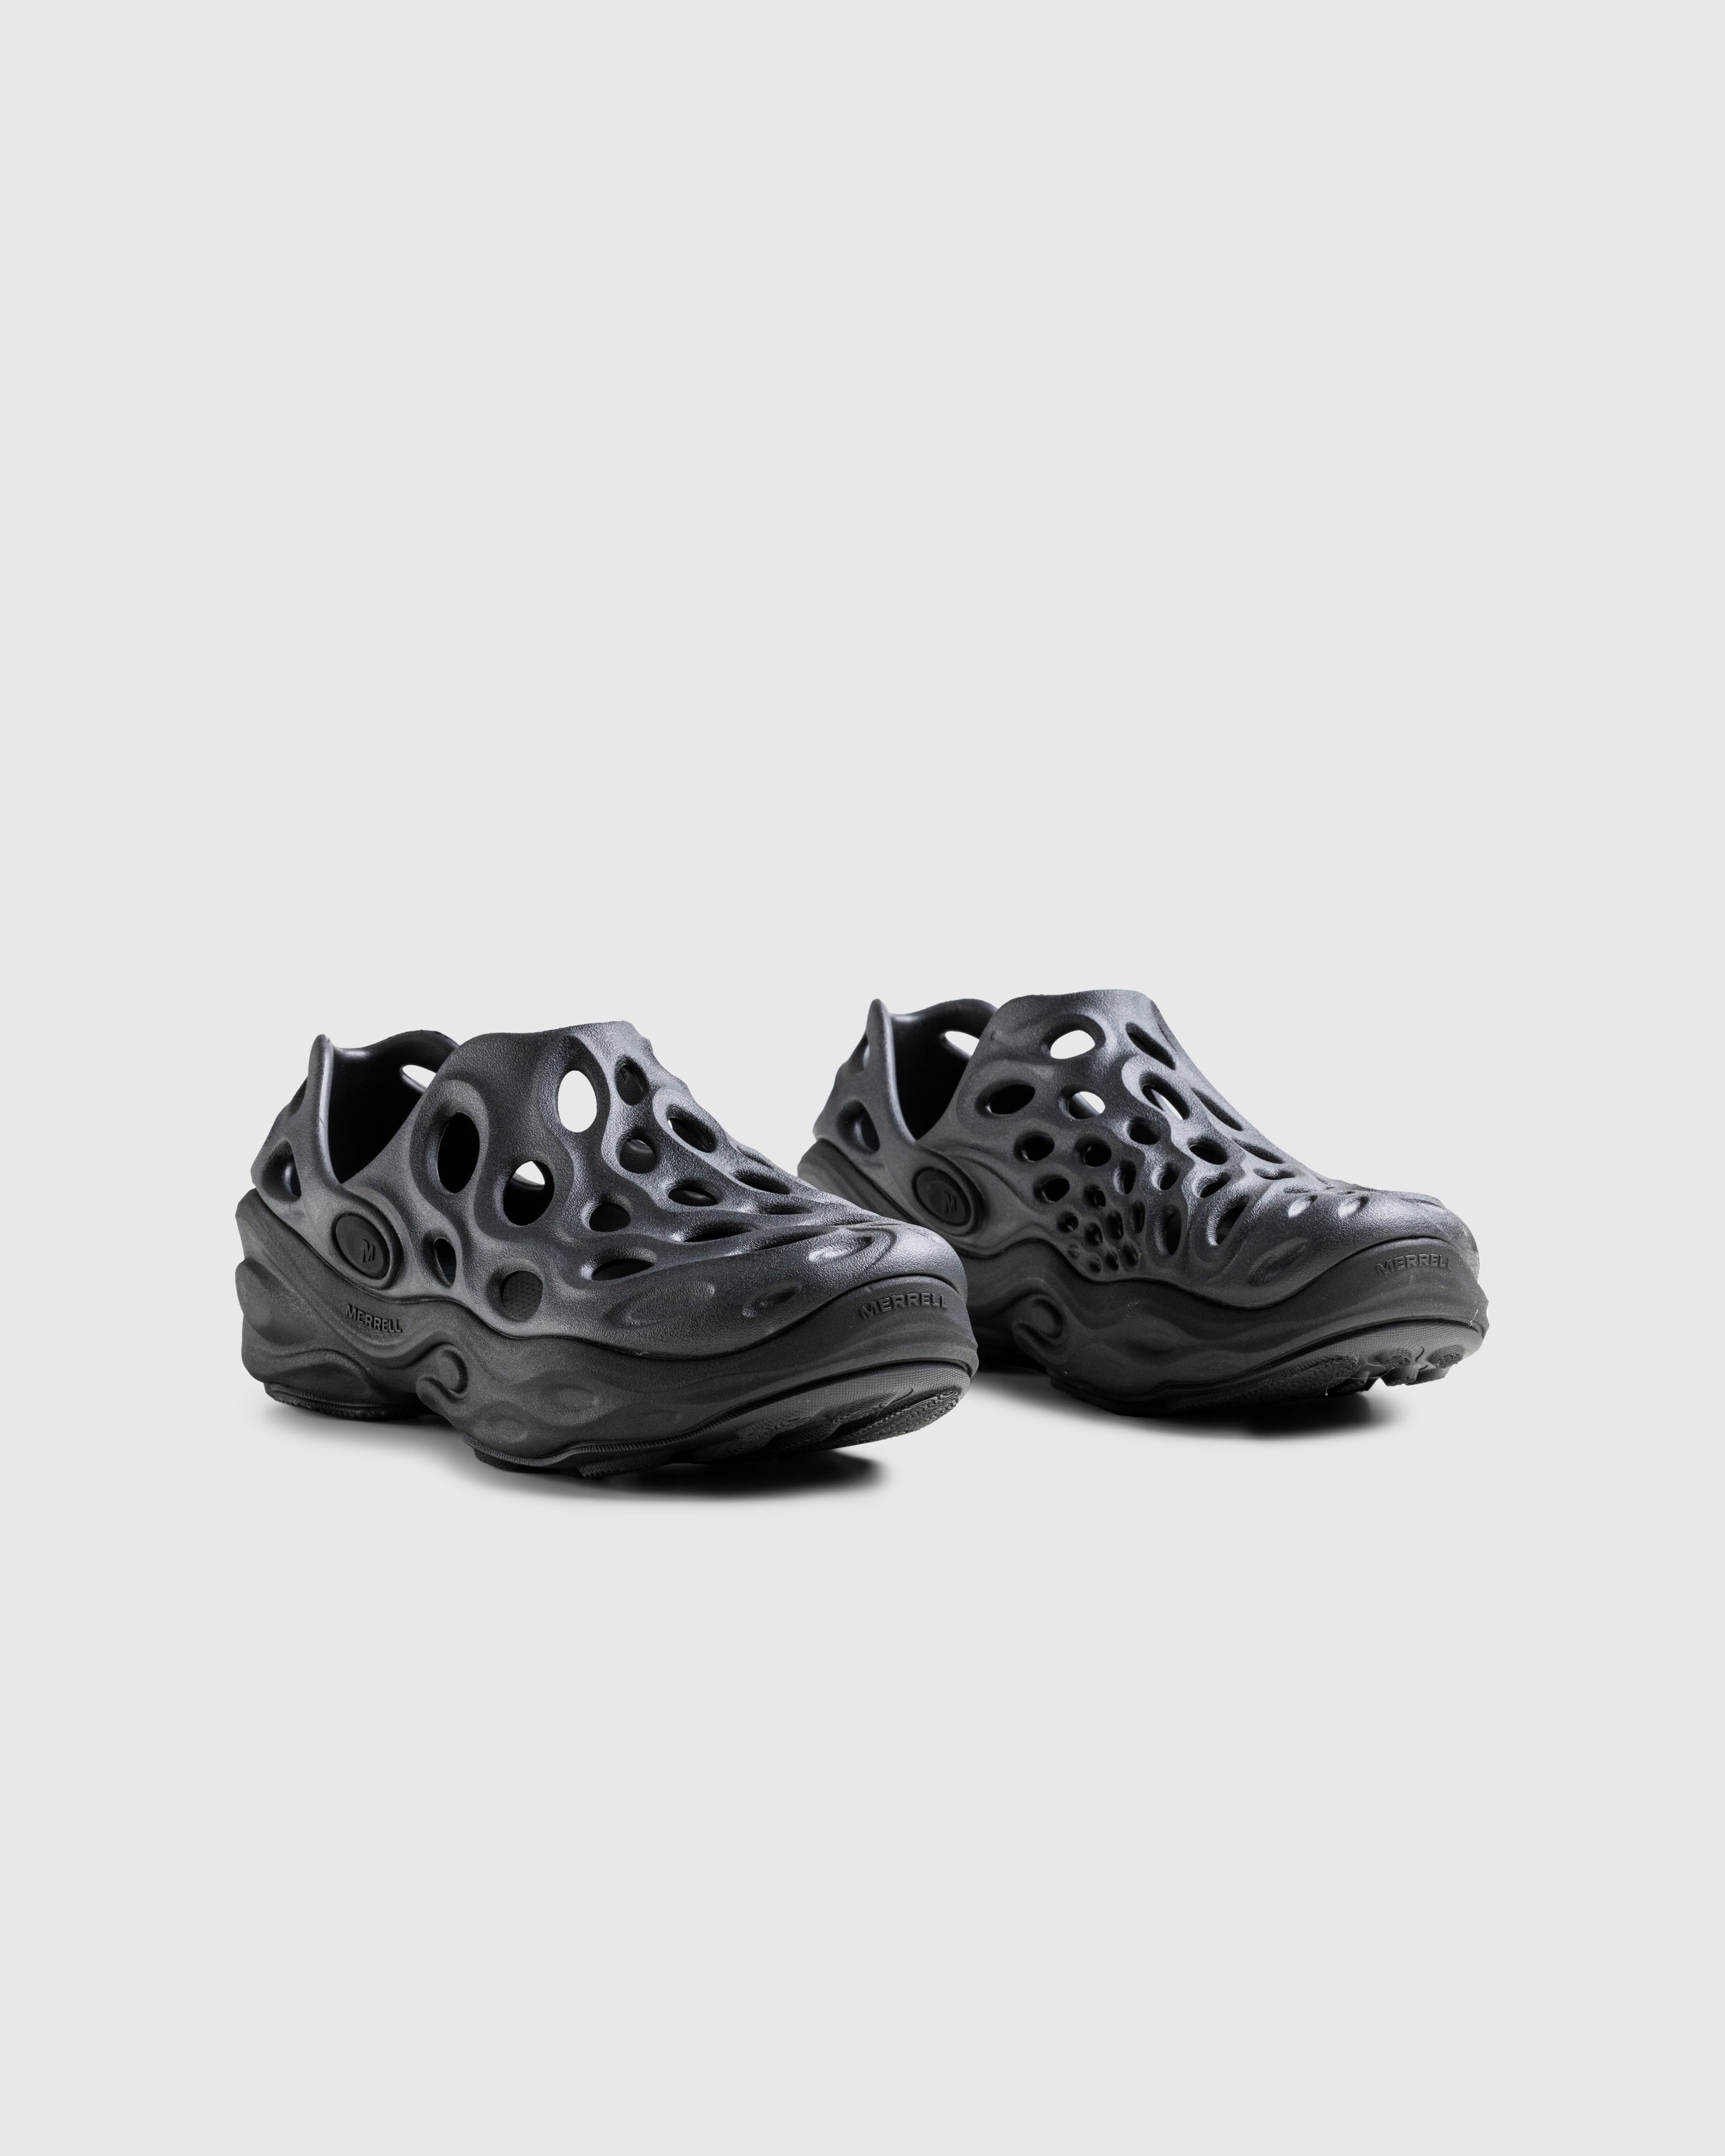 Merrell - HYDRO NEXT GEN MOC SE/TRIPLE BLACK - Footwear - Black - Image 3